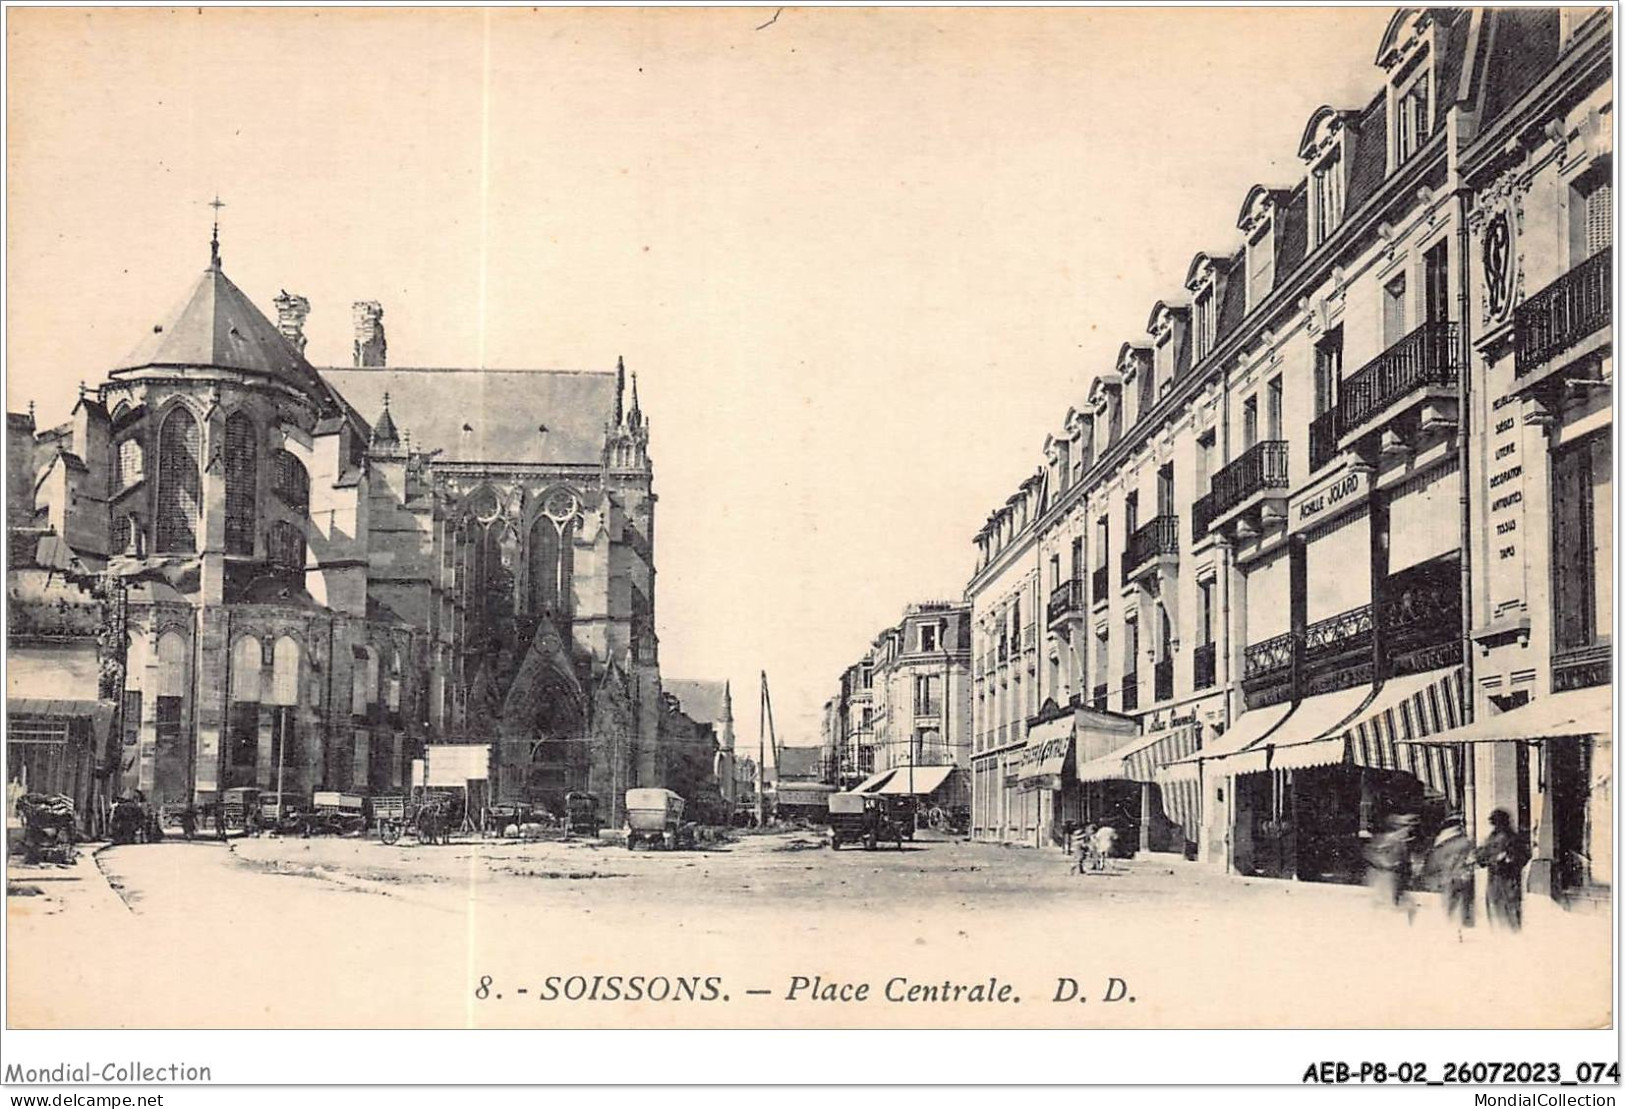 AEBP8-02-0720 - SOISSONS - Place Centrale  - Soissons